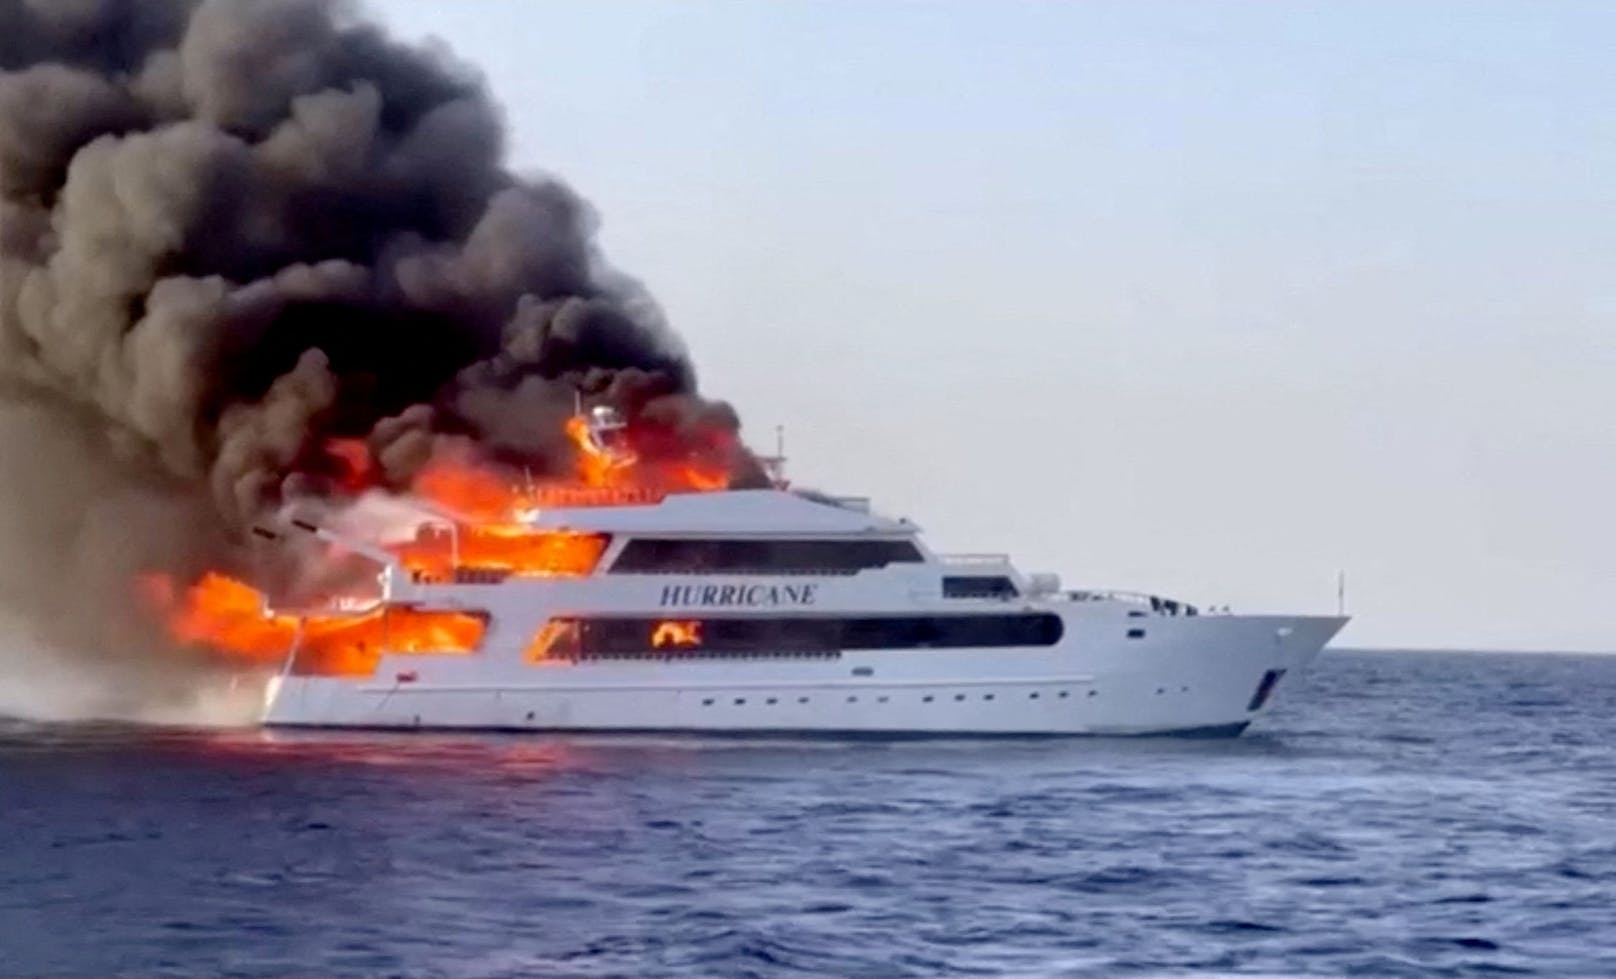 Das Boot "Hurricane" brannte am Sonntag vor der ägyptischen Küste völlig aus.